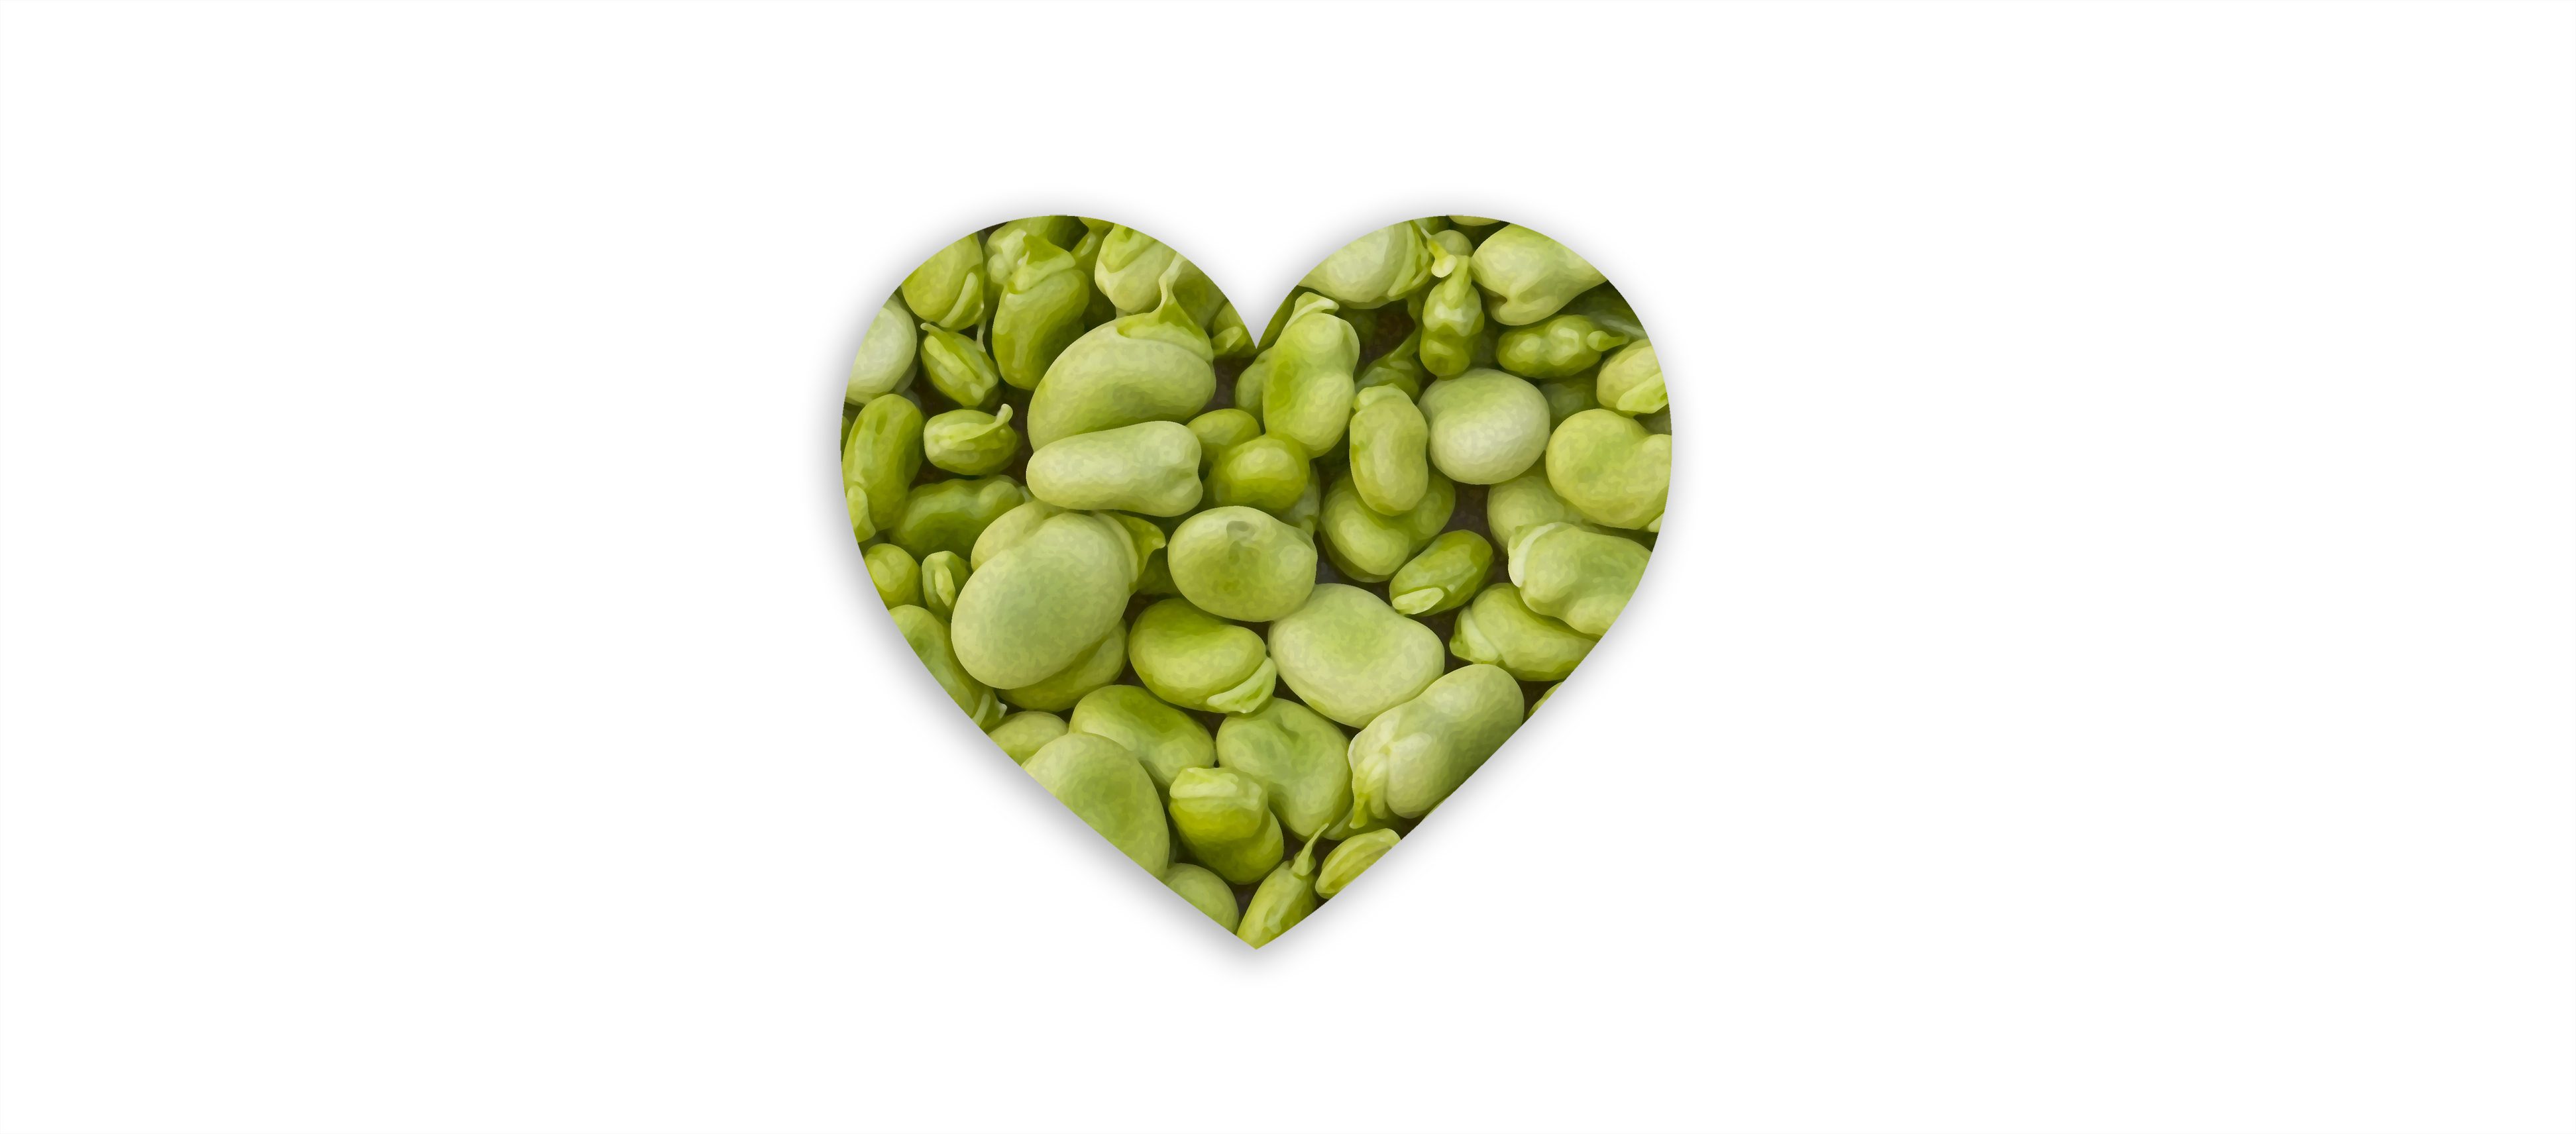 Lima bean love. 